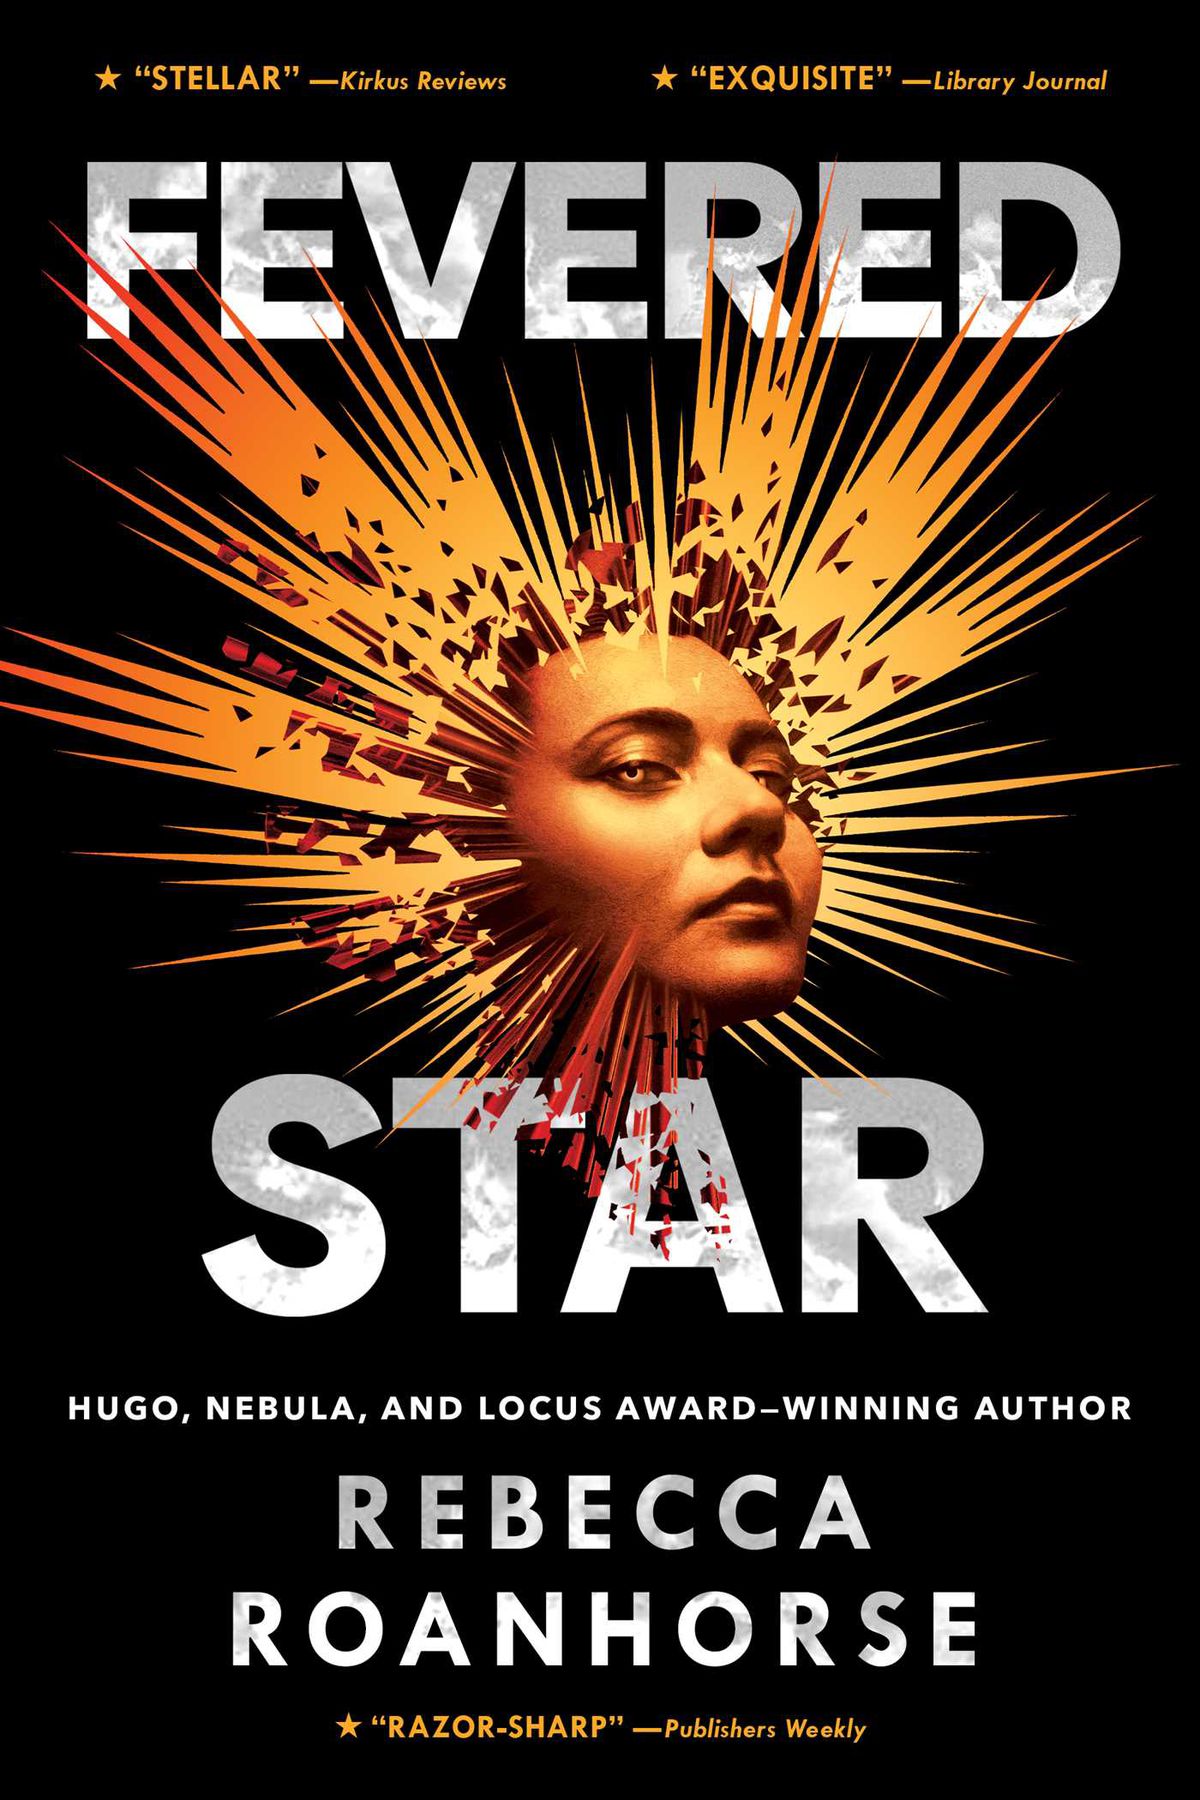 La copertina di Fevered Star, che centra un volto con una luce dorata illustrata che perfora intorno ad esso.